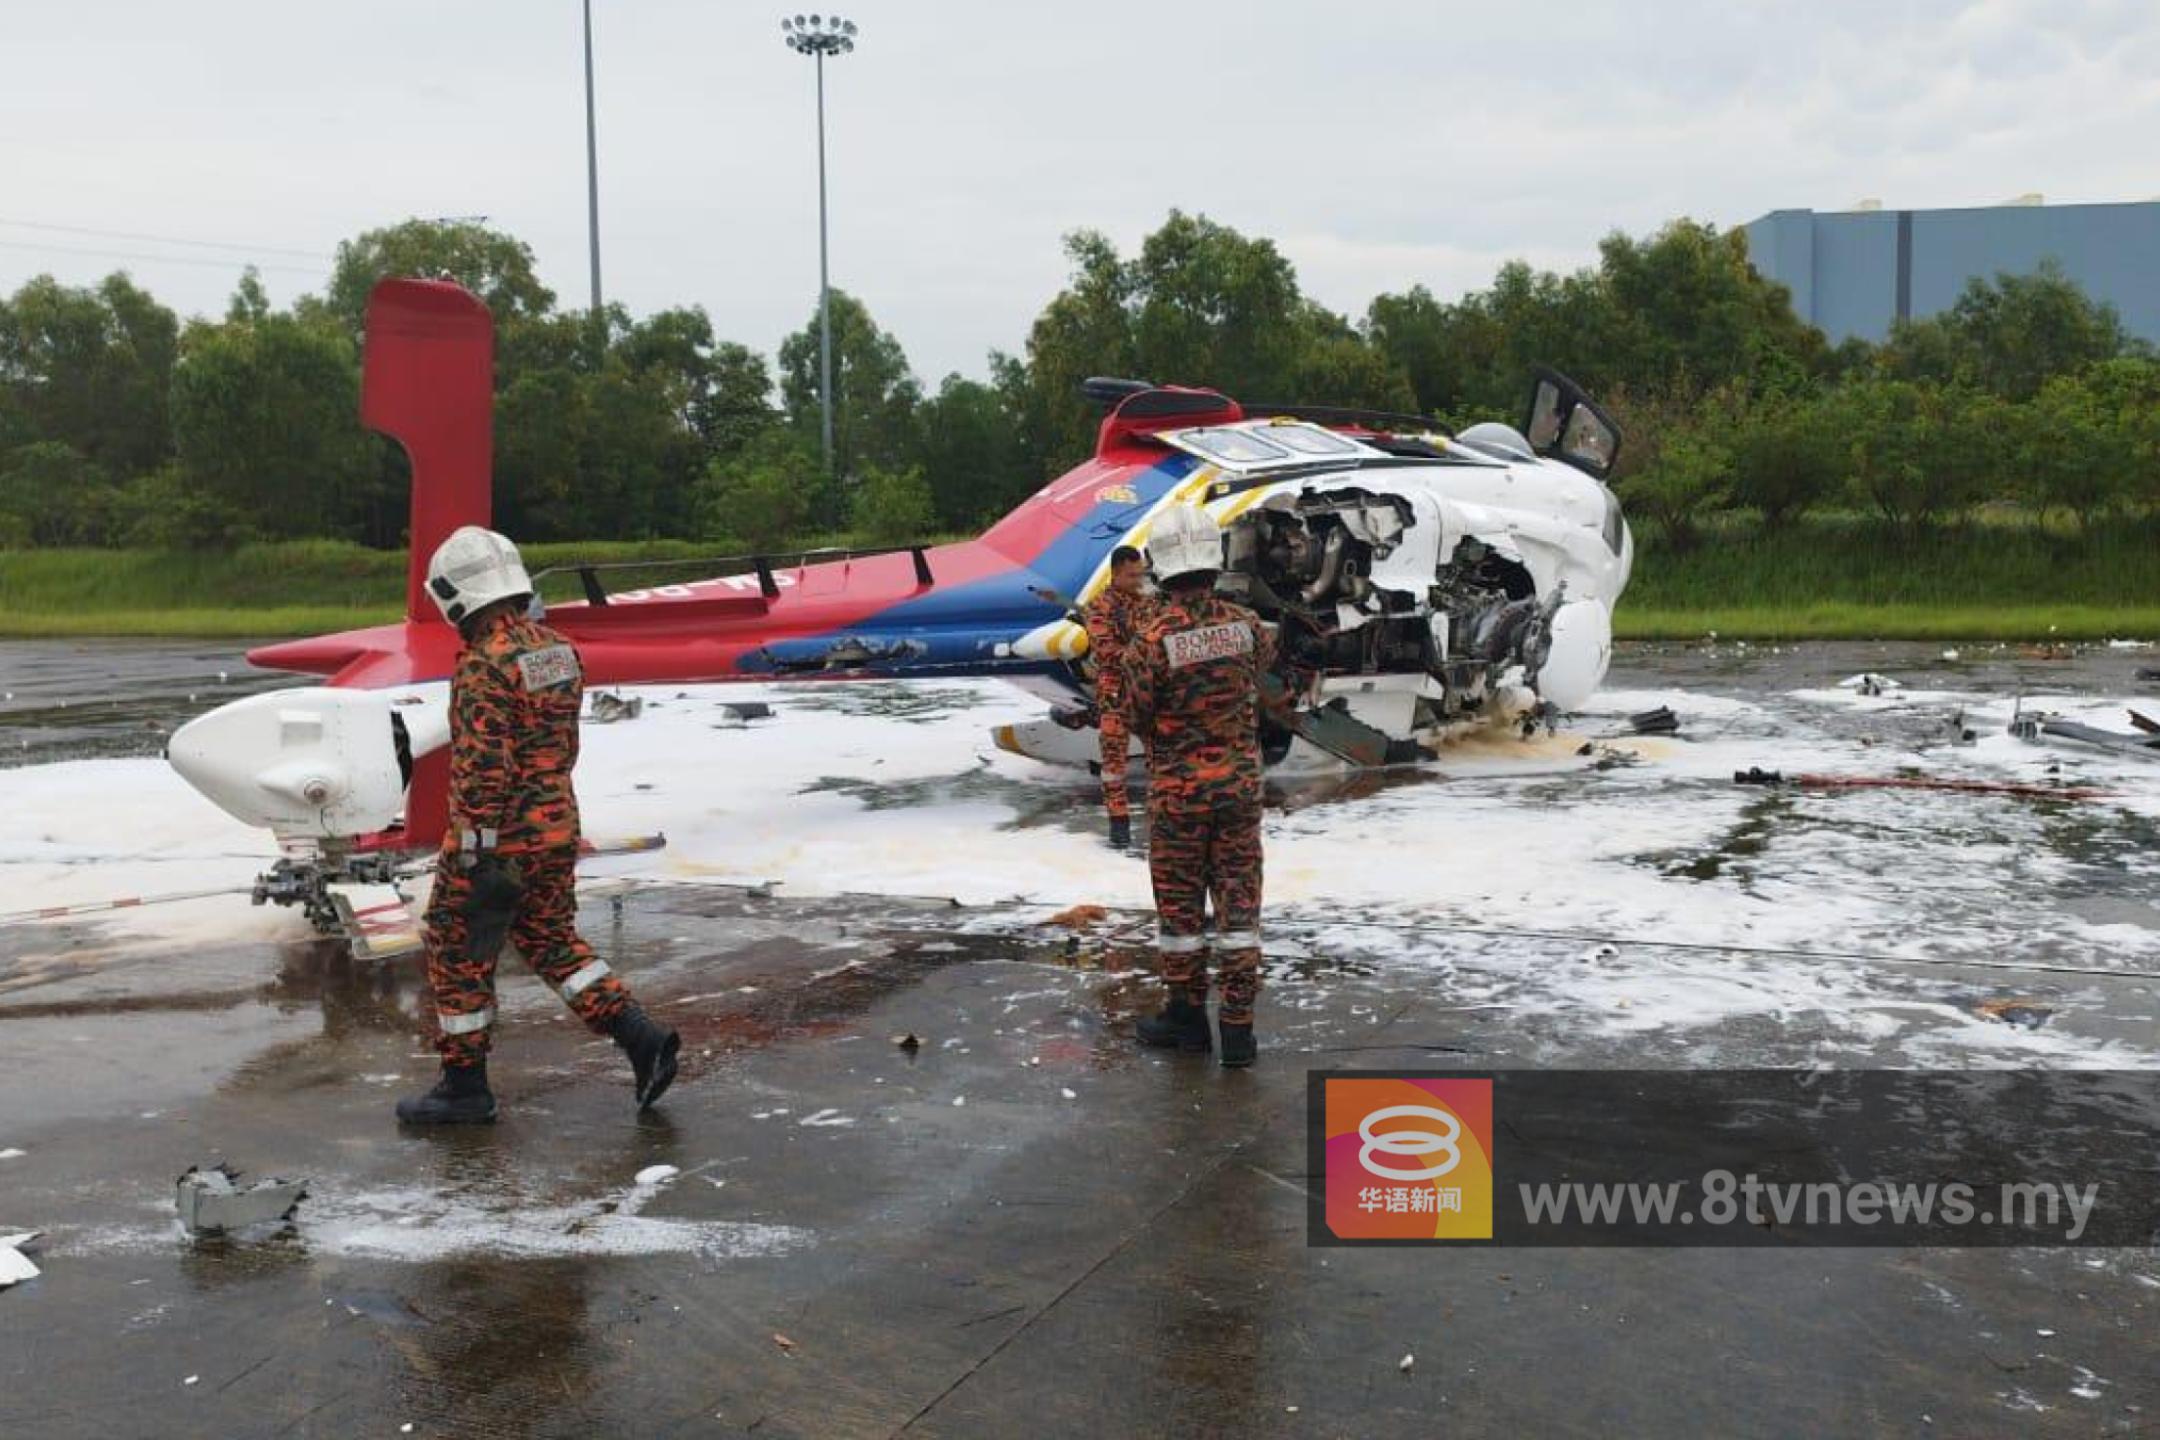 测试期间硬着陆 直升机坠毁7人获救